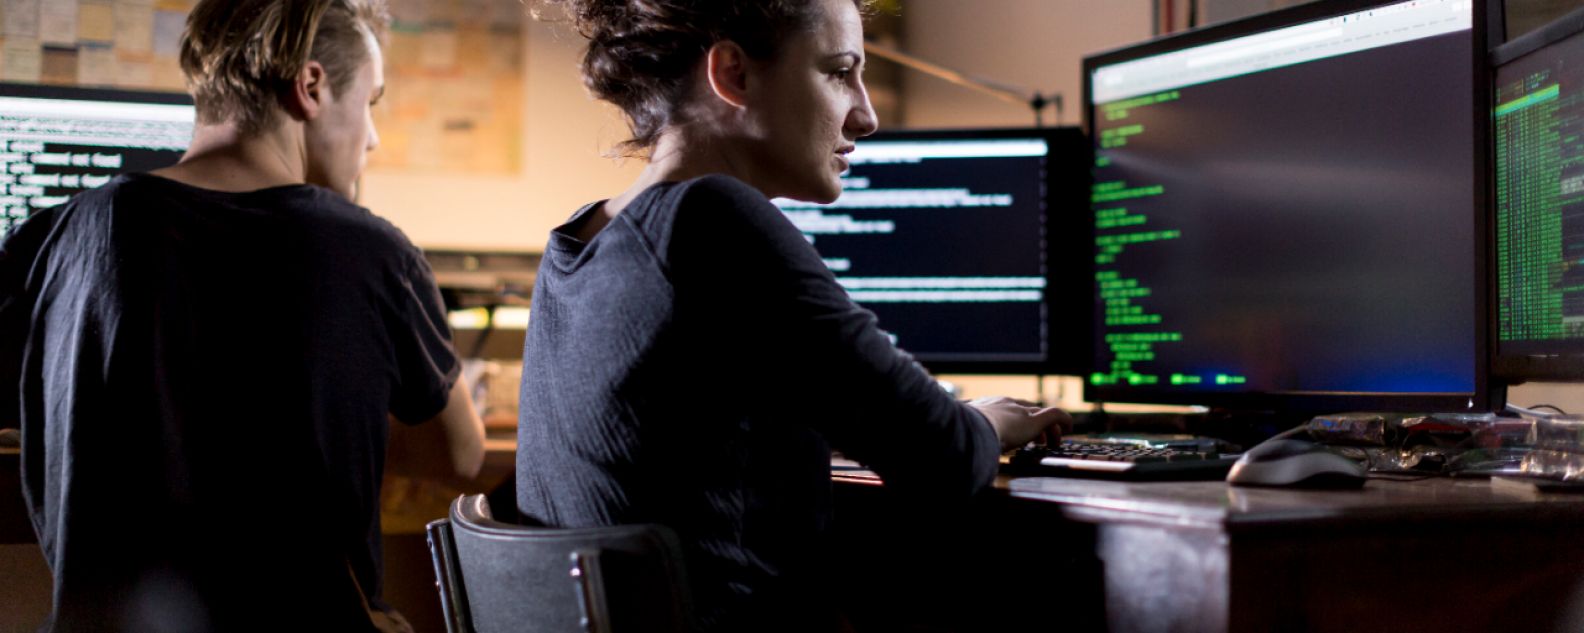 Frau beim Programmieren vor einem großen Monitor